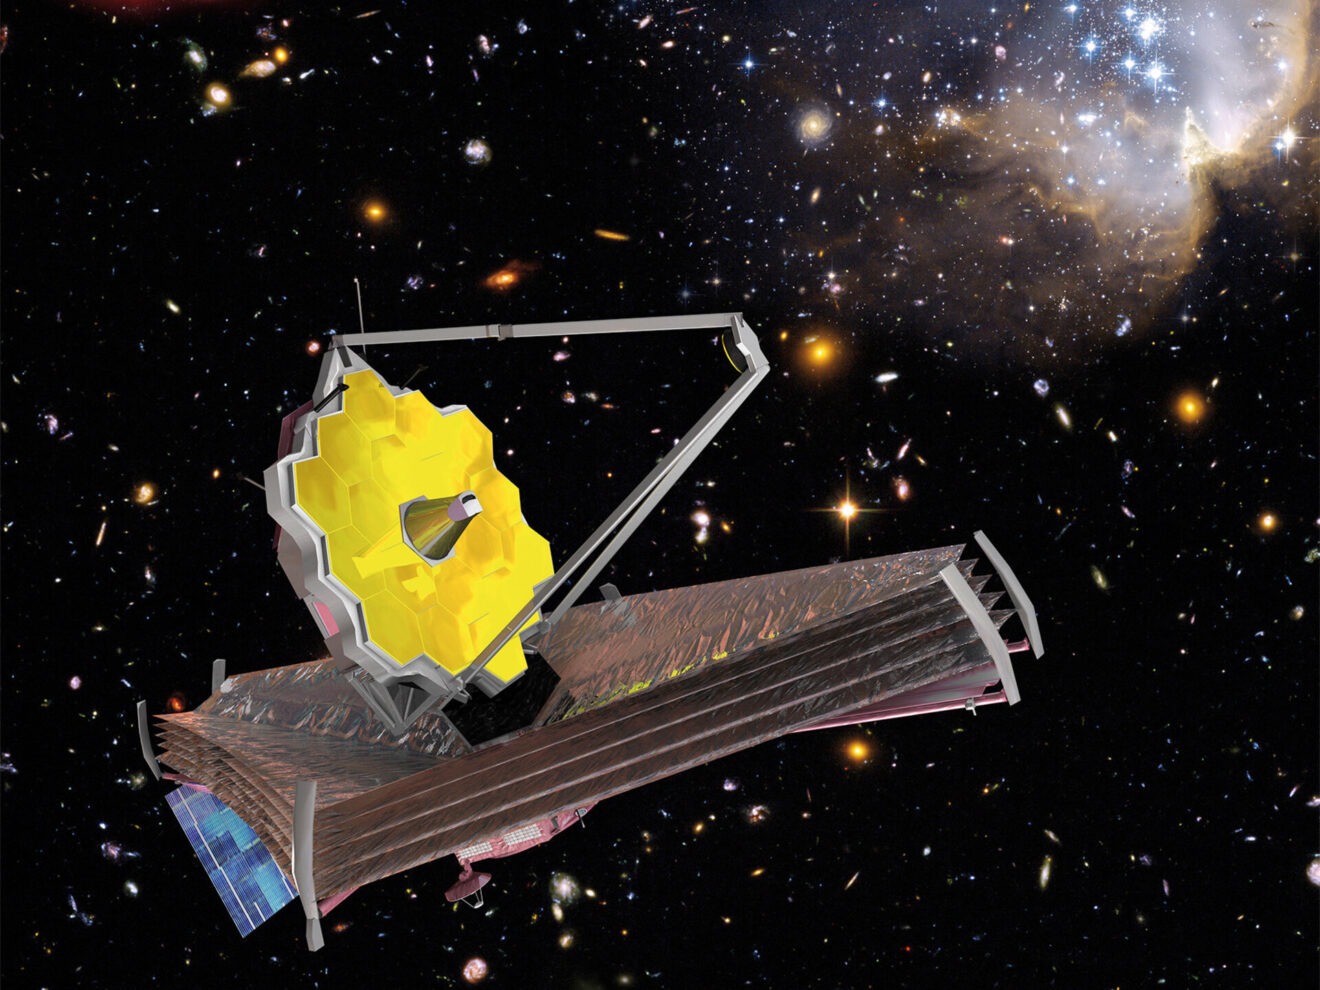 Over de laatste ontdekkingen met de Webb ruimtetelescoop